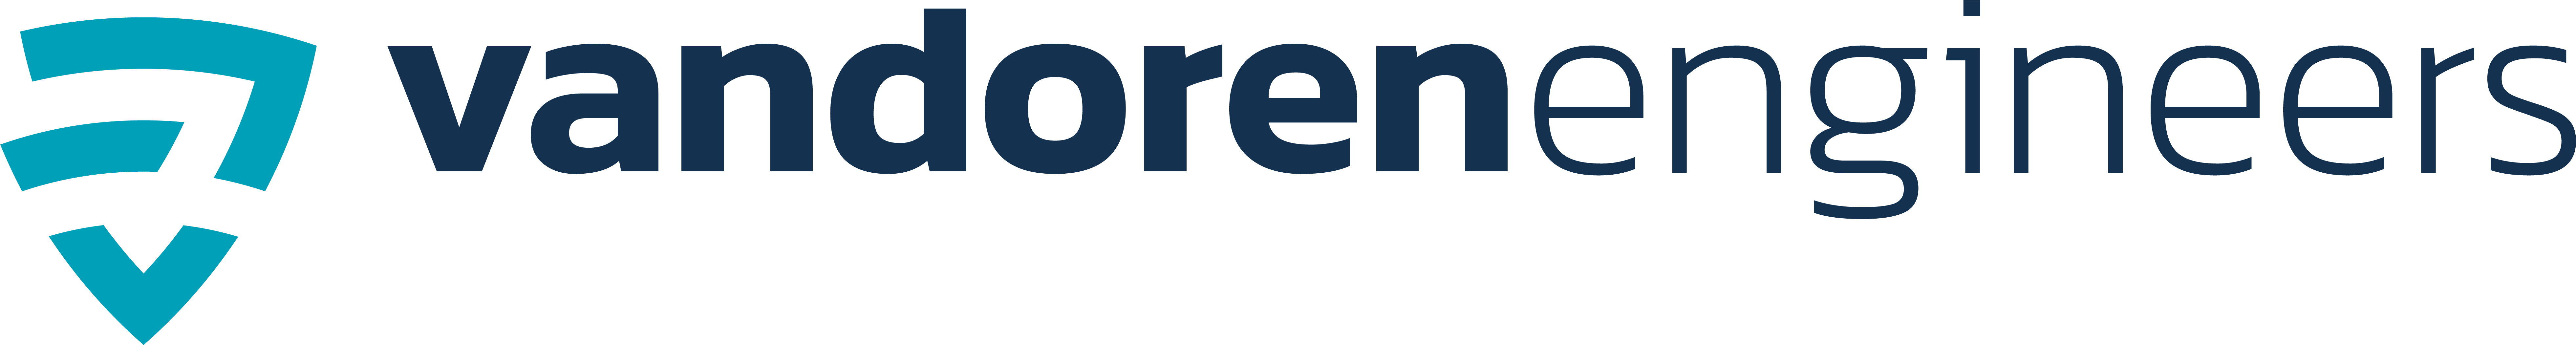 Van Doren Engineers logo